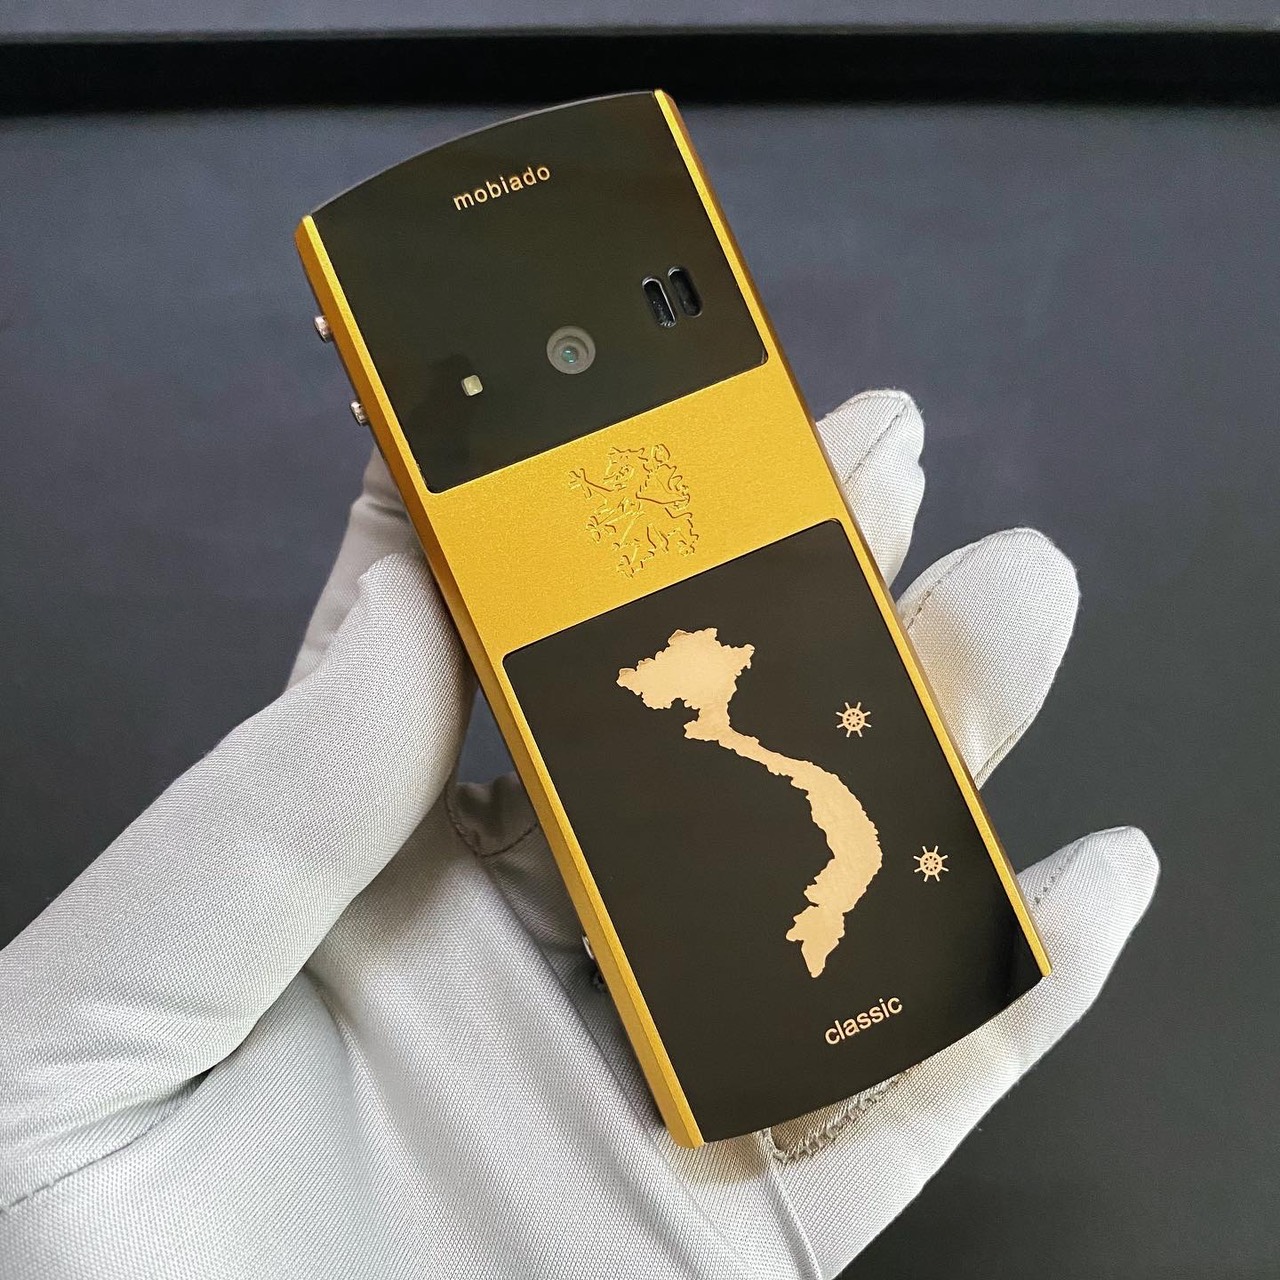 Điện thoại mobiado classic 712 Yellow Gold Vietnam khắc bản đồ Việt Nam